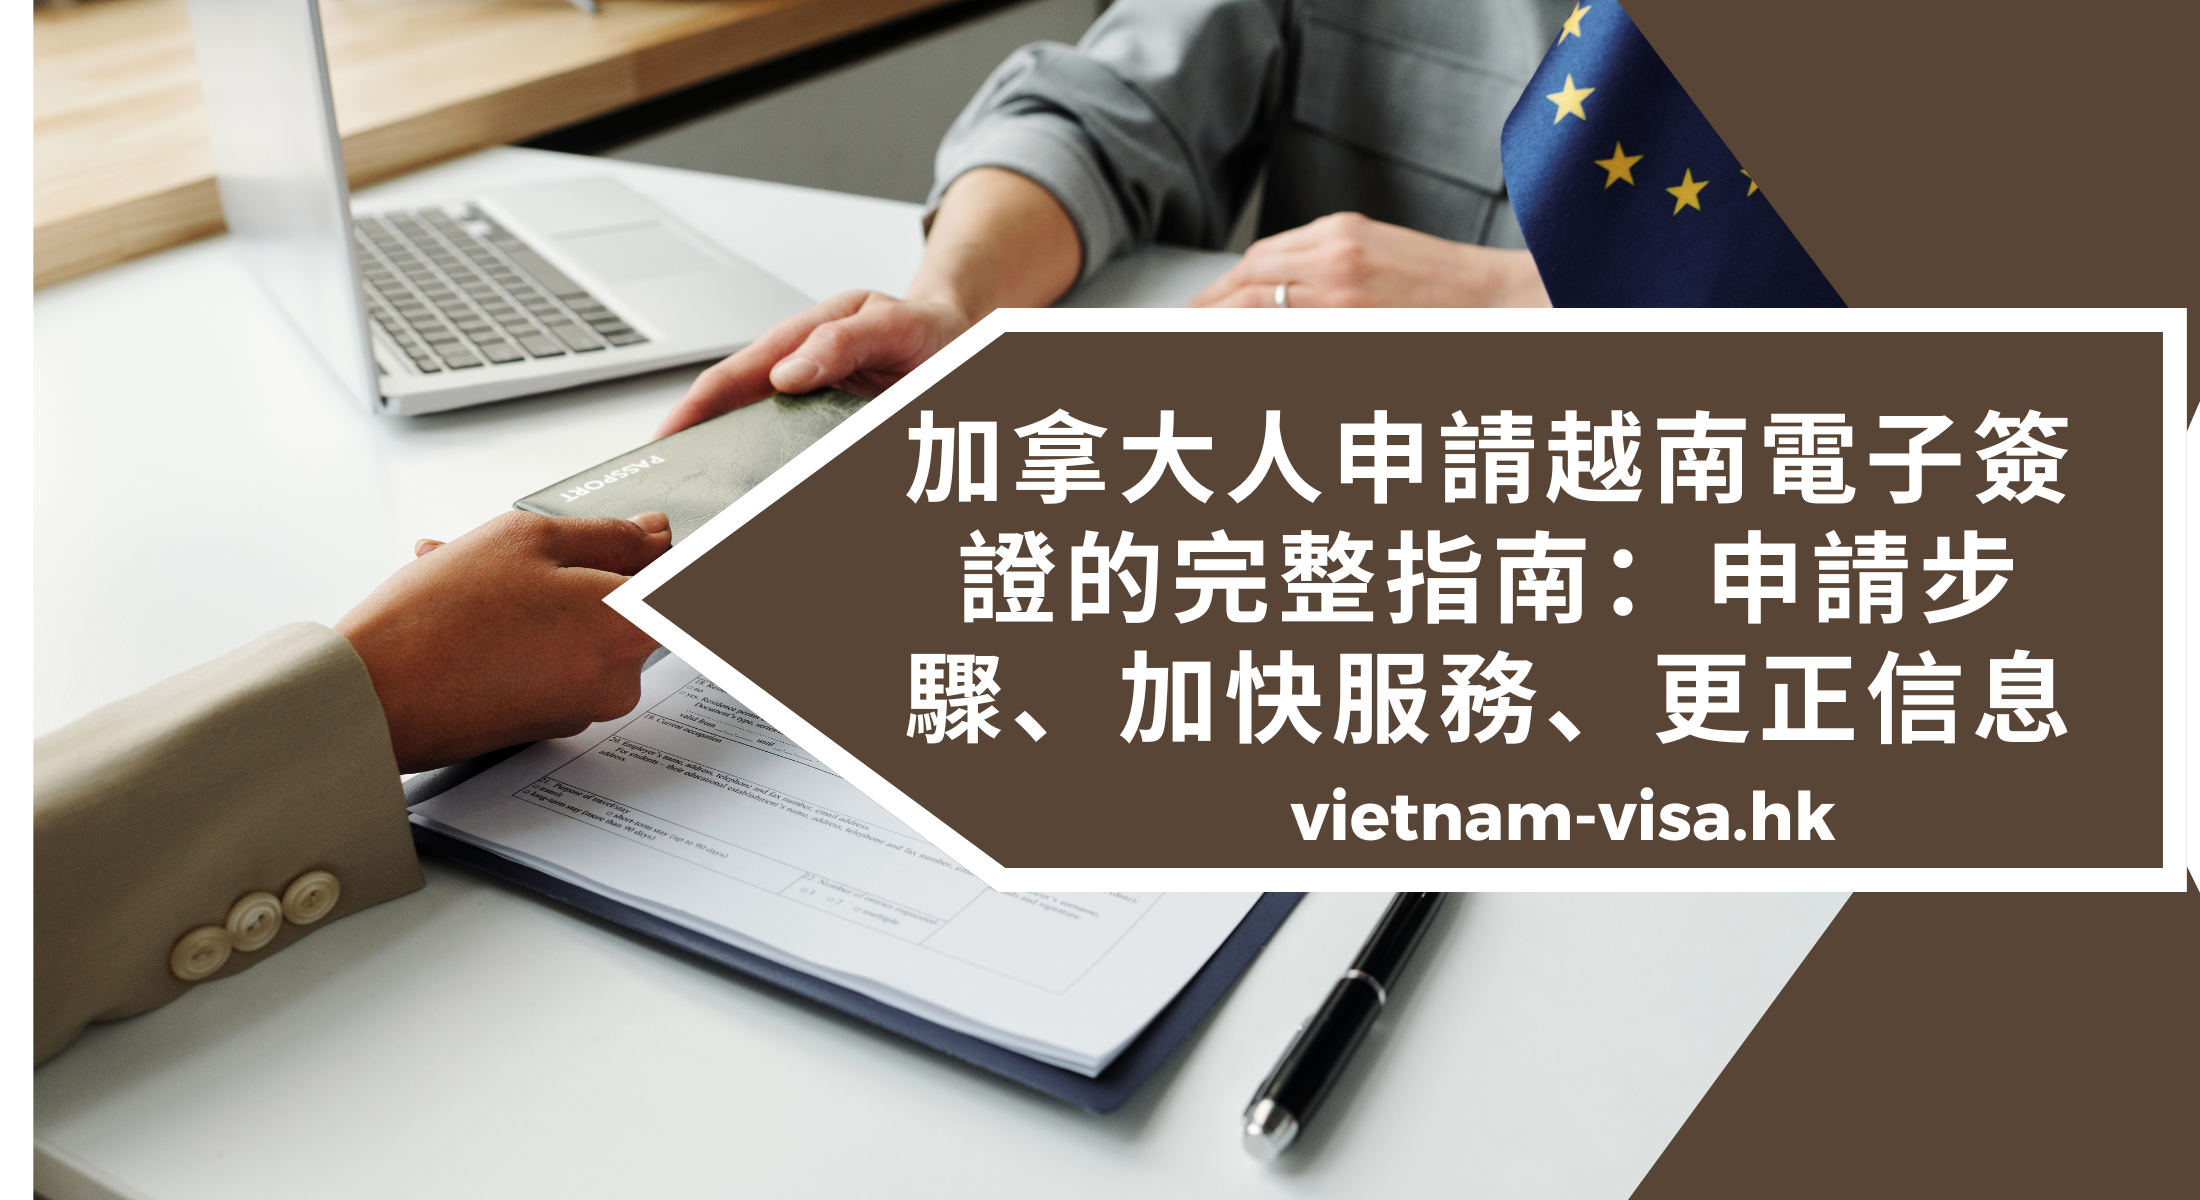 加拿大人申請越南電子簽證的完整指南：申請步驟、加快申請、更正信息